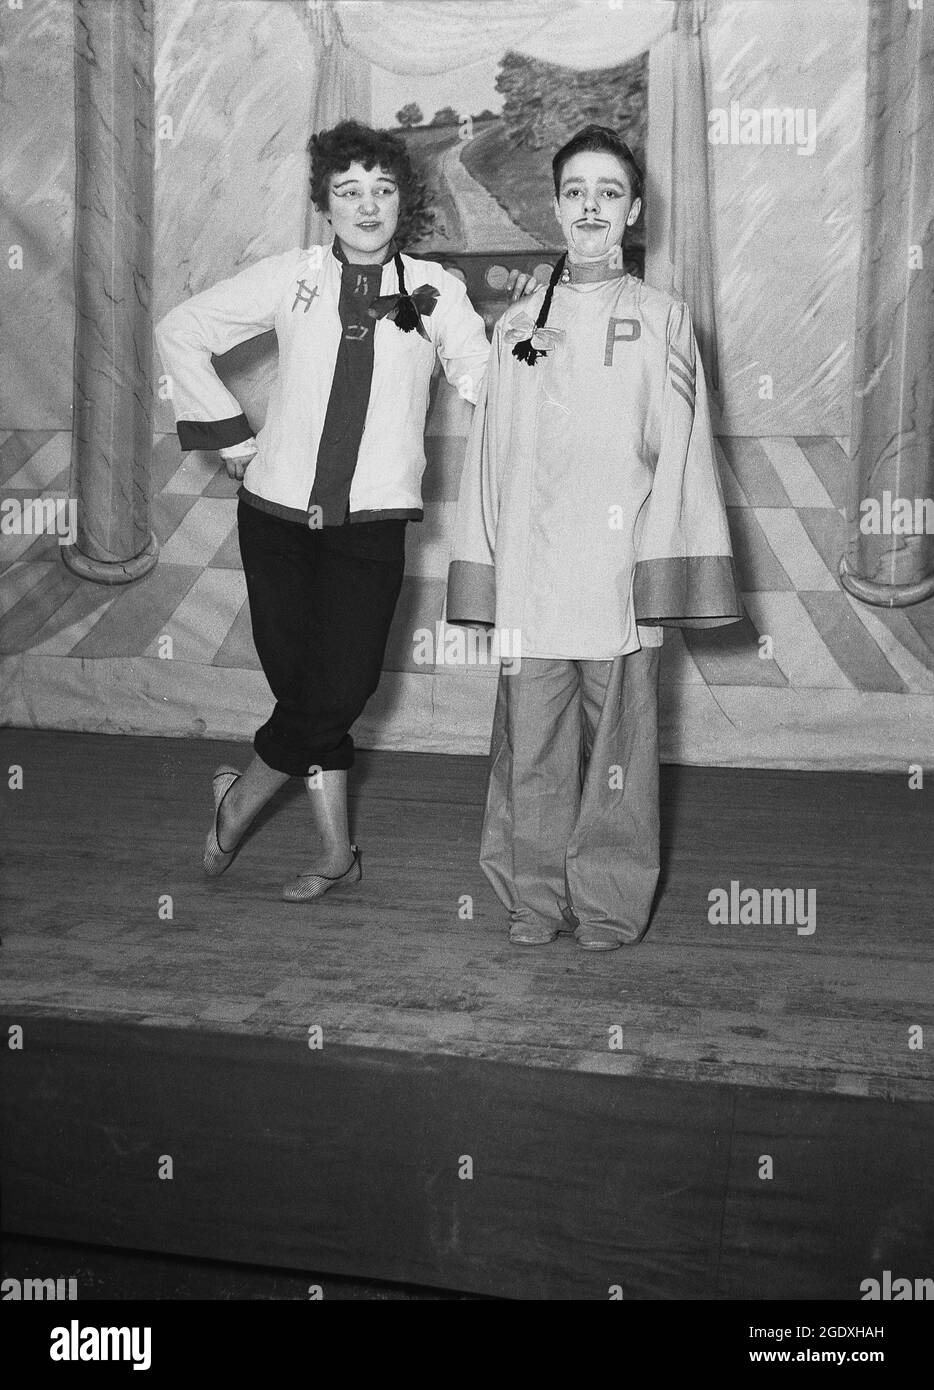 1957, historique, deux artistes dans leurs costumes apparaissant dans la pantomine Aladdin, basé sur l'histoire populaire du Moyen-Orient sur une jeunesse pauvre qui vient en possession d'une lampe magique, debout sur la scène pour leur photo, Angleterre, Royaume-Uni. Banque D'Images